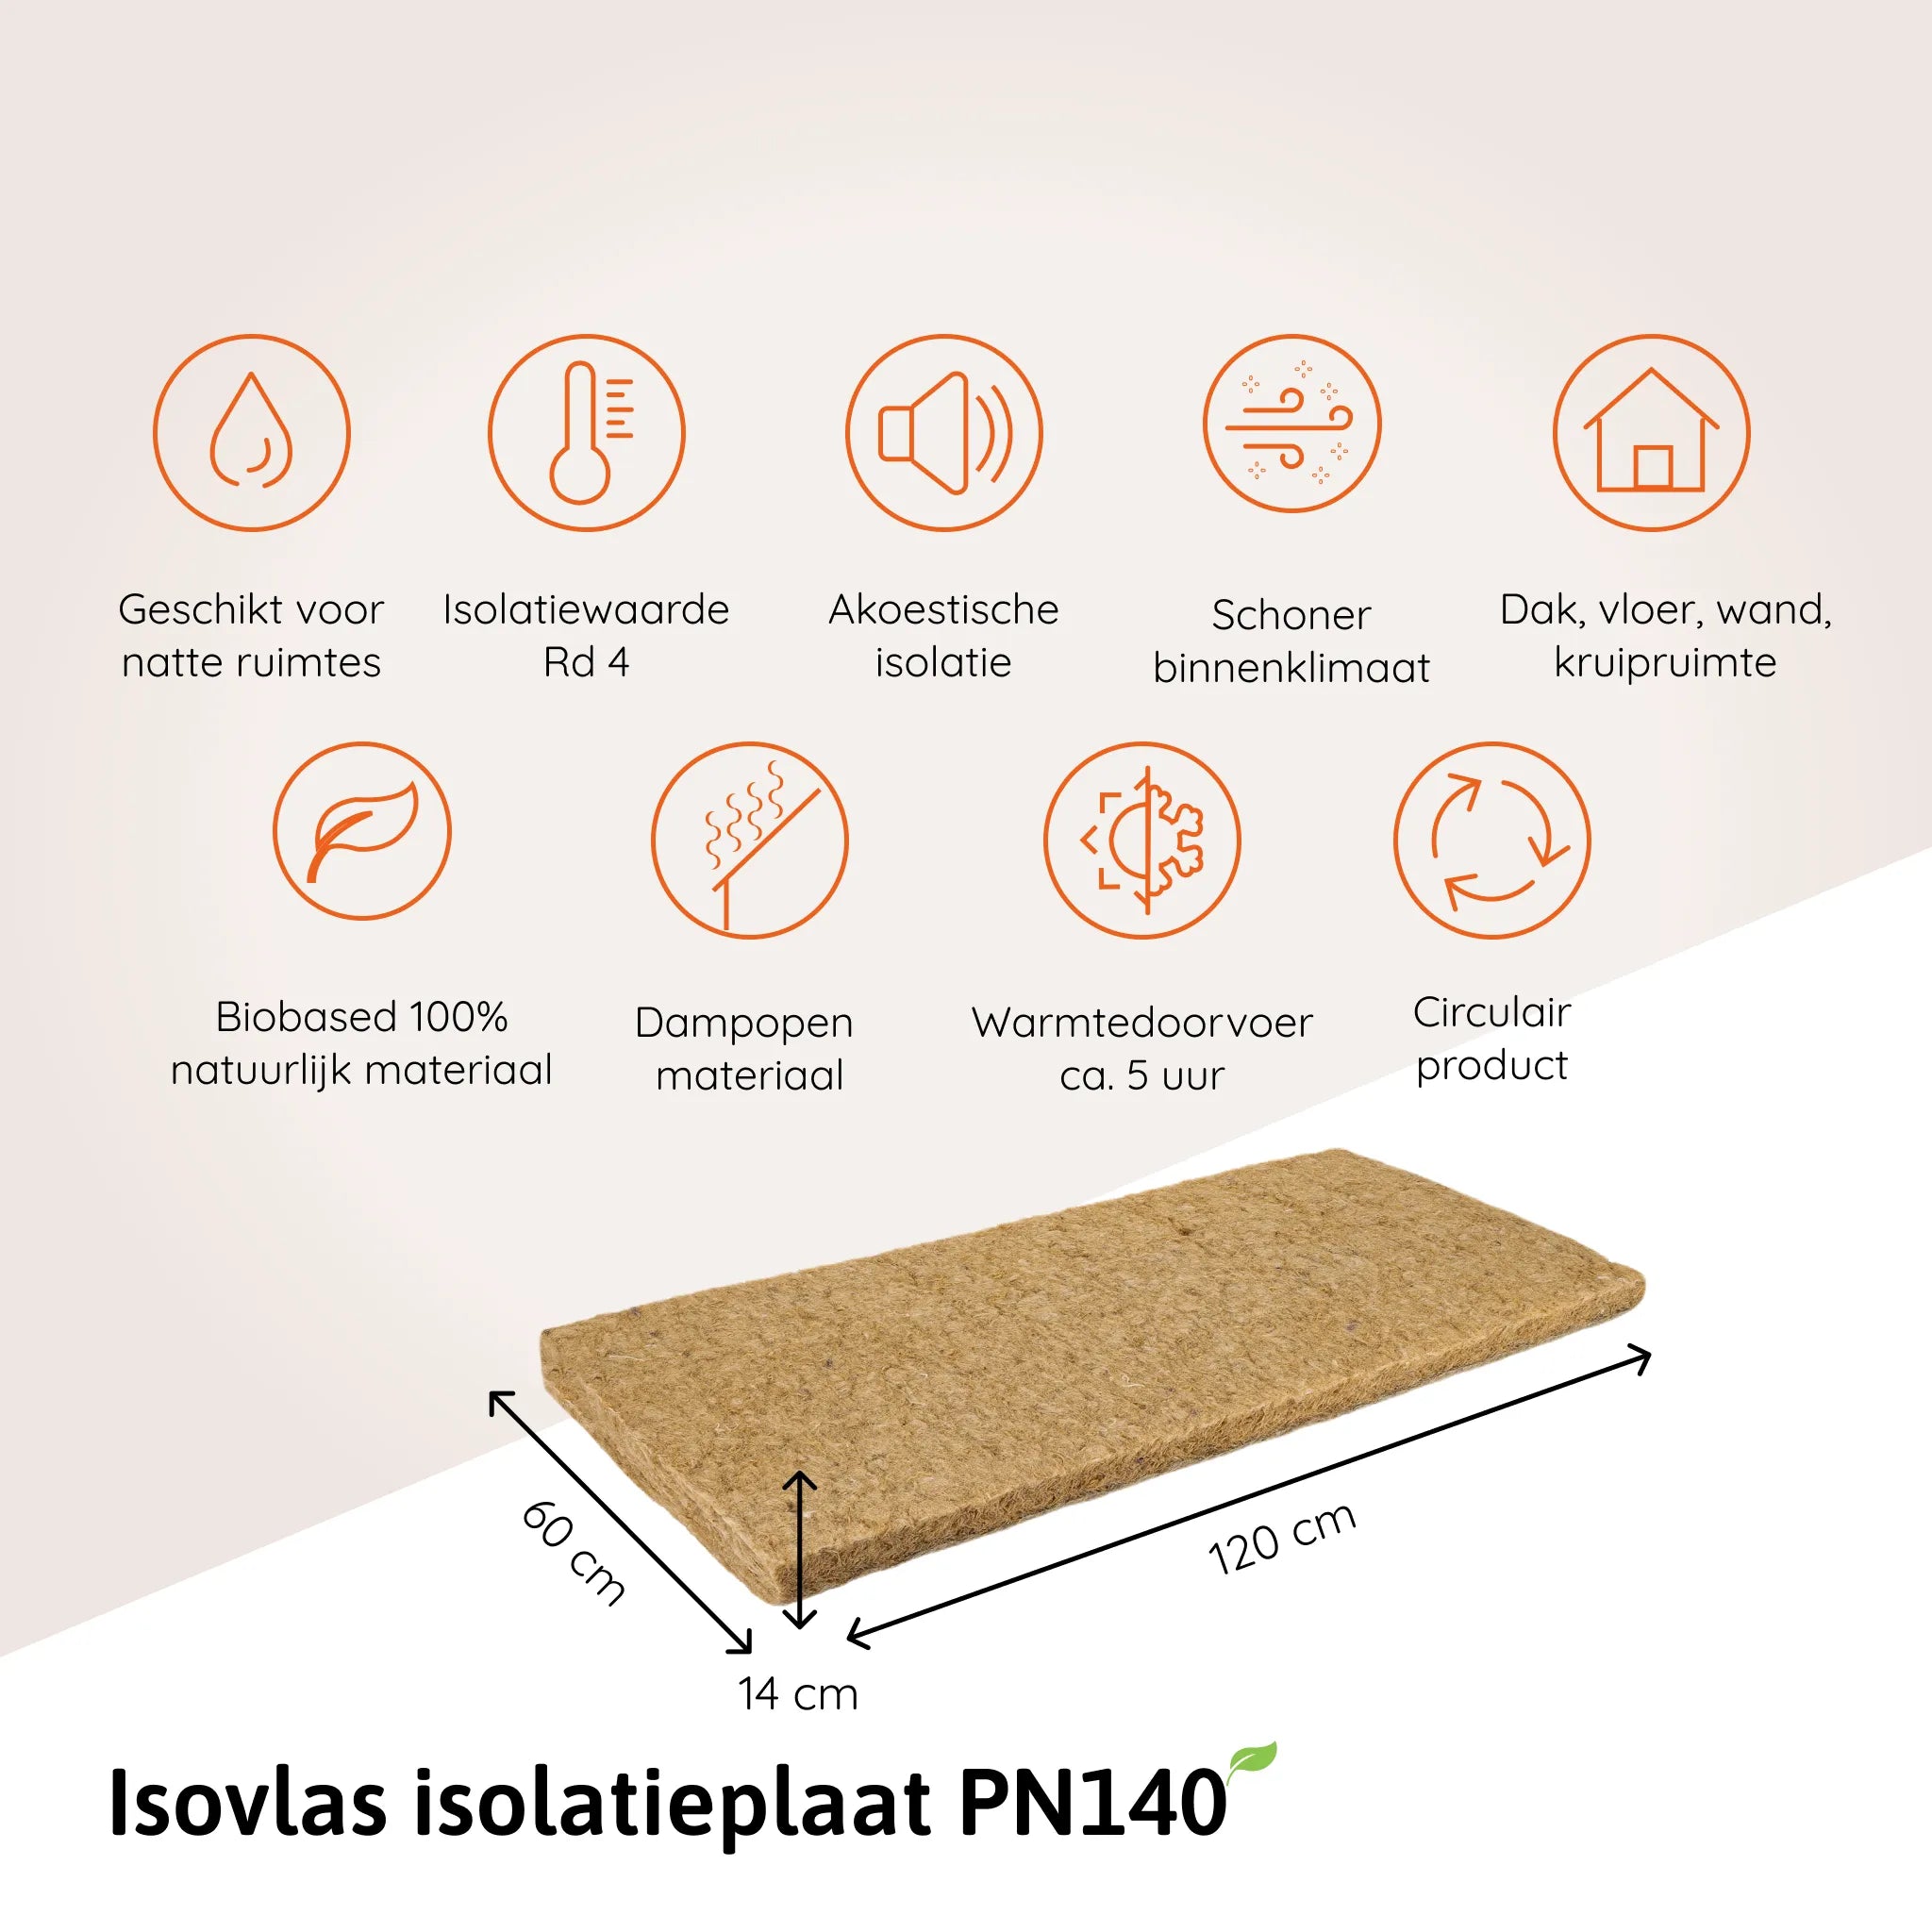 Isovlas isolatieplaat PN140